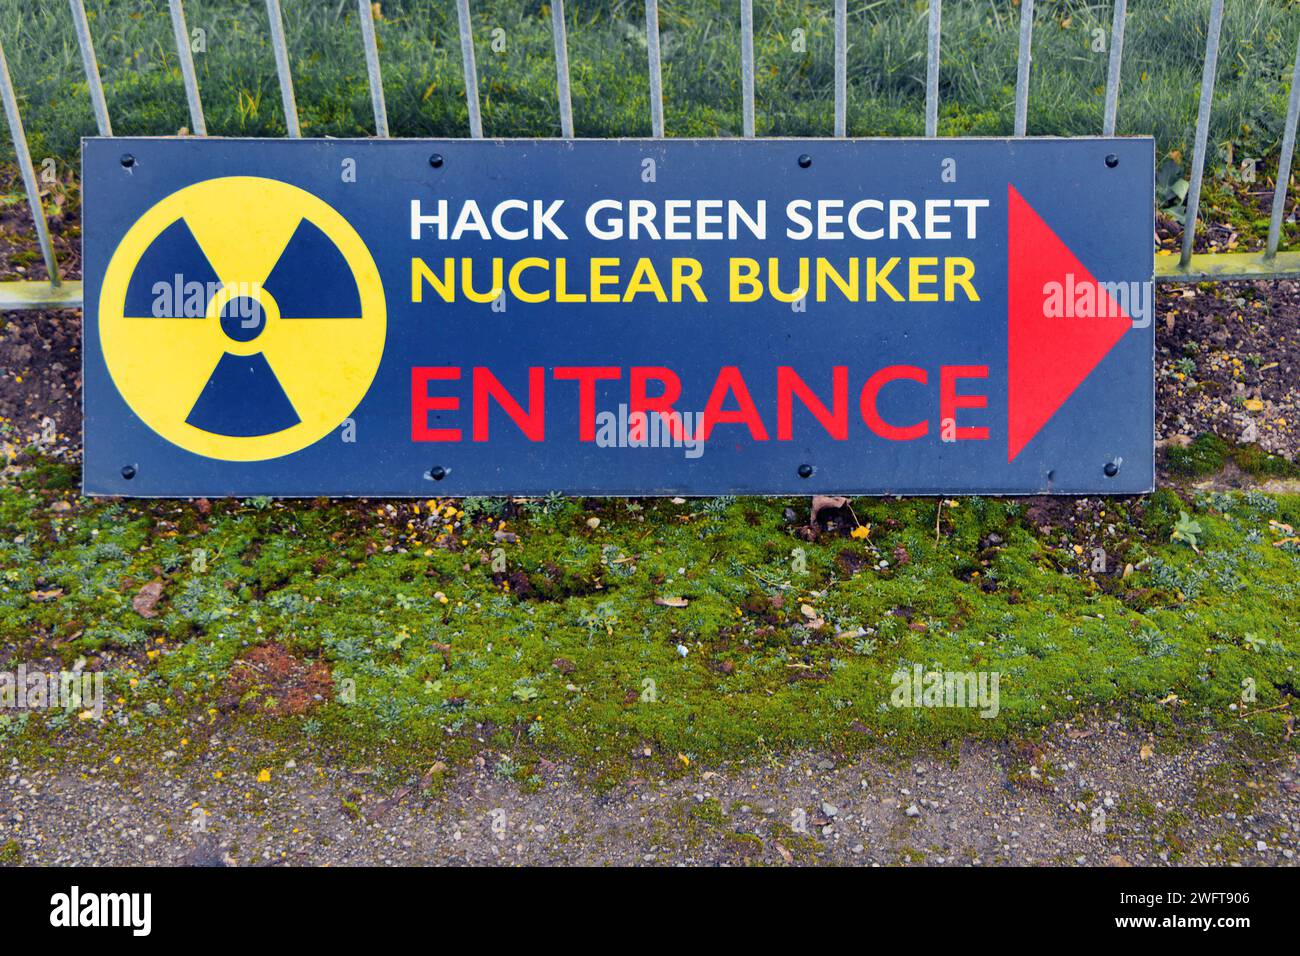 Eingangsschild am MOD Hack Green Secret Bunker cheshire, im Kalten Krieg als nukleare Sprengunterkunft benutzt, Kommandoposten jetzt ein Museum Stockfoto